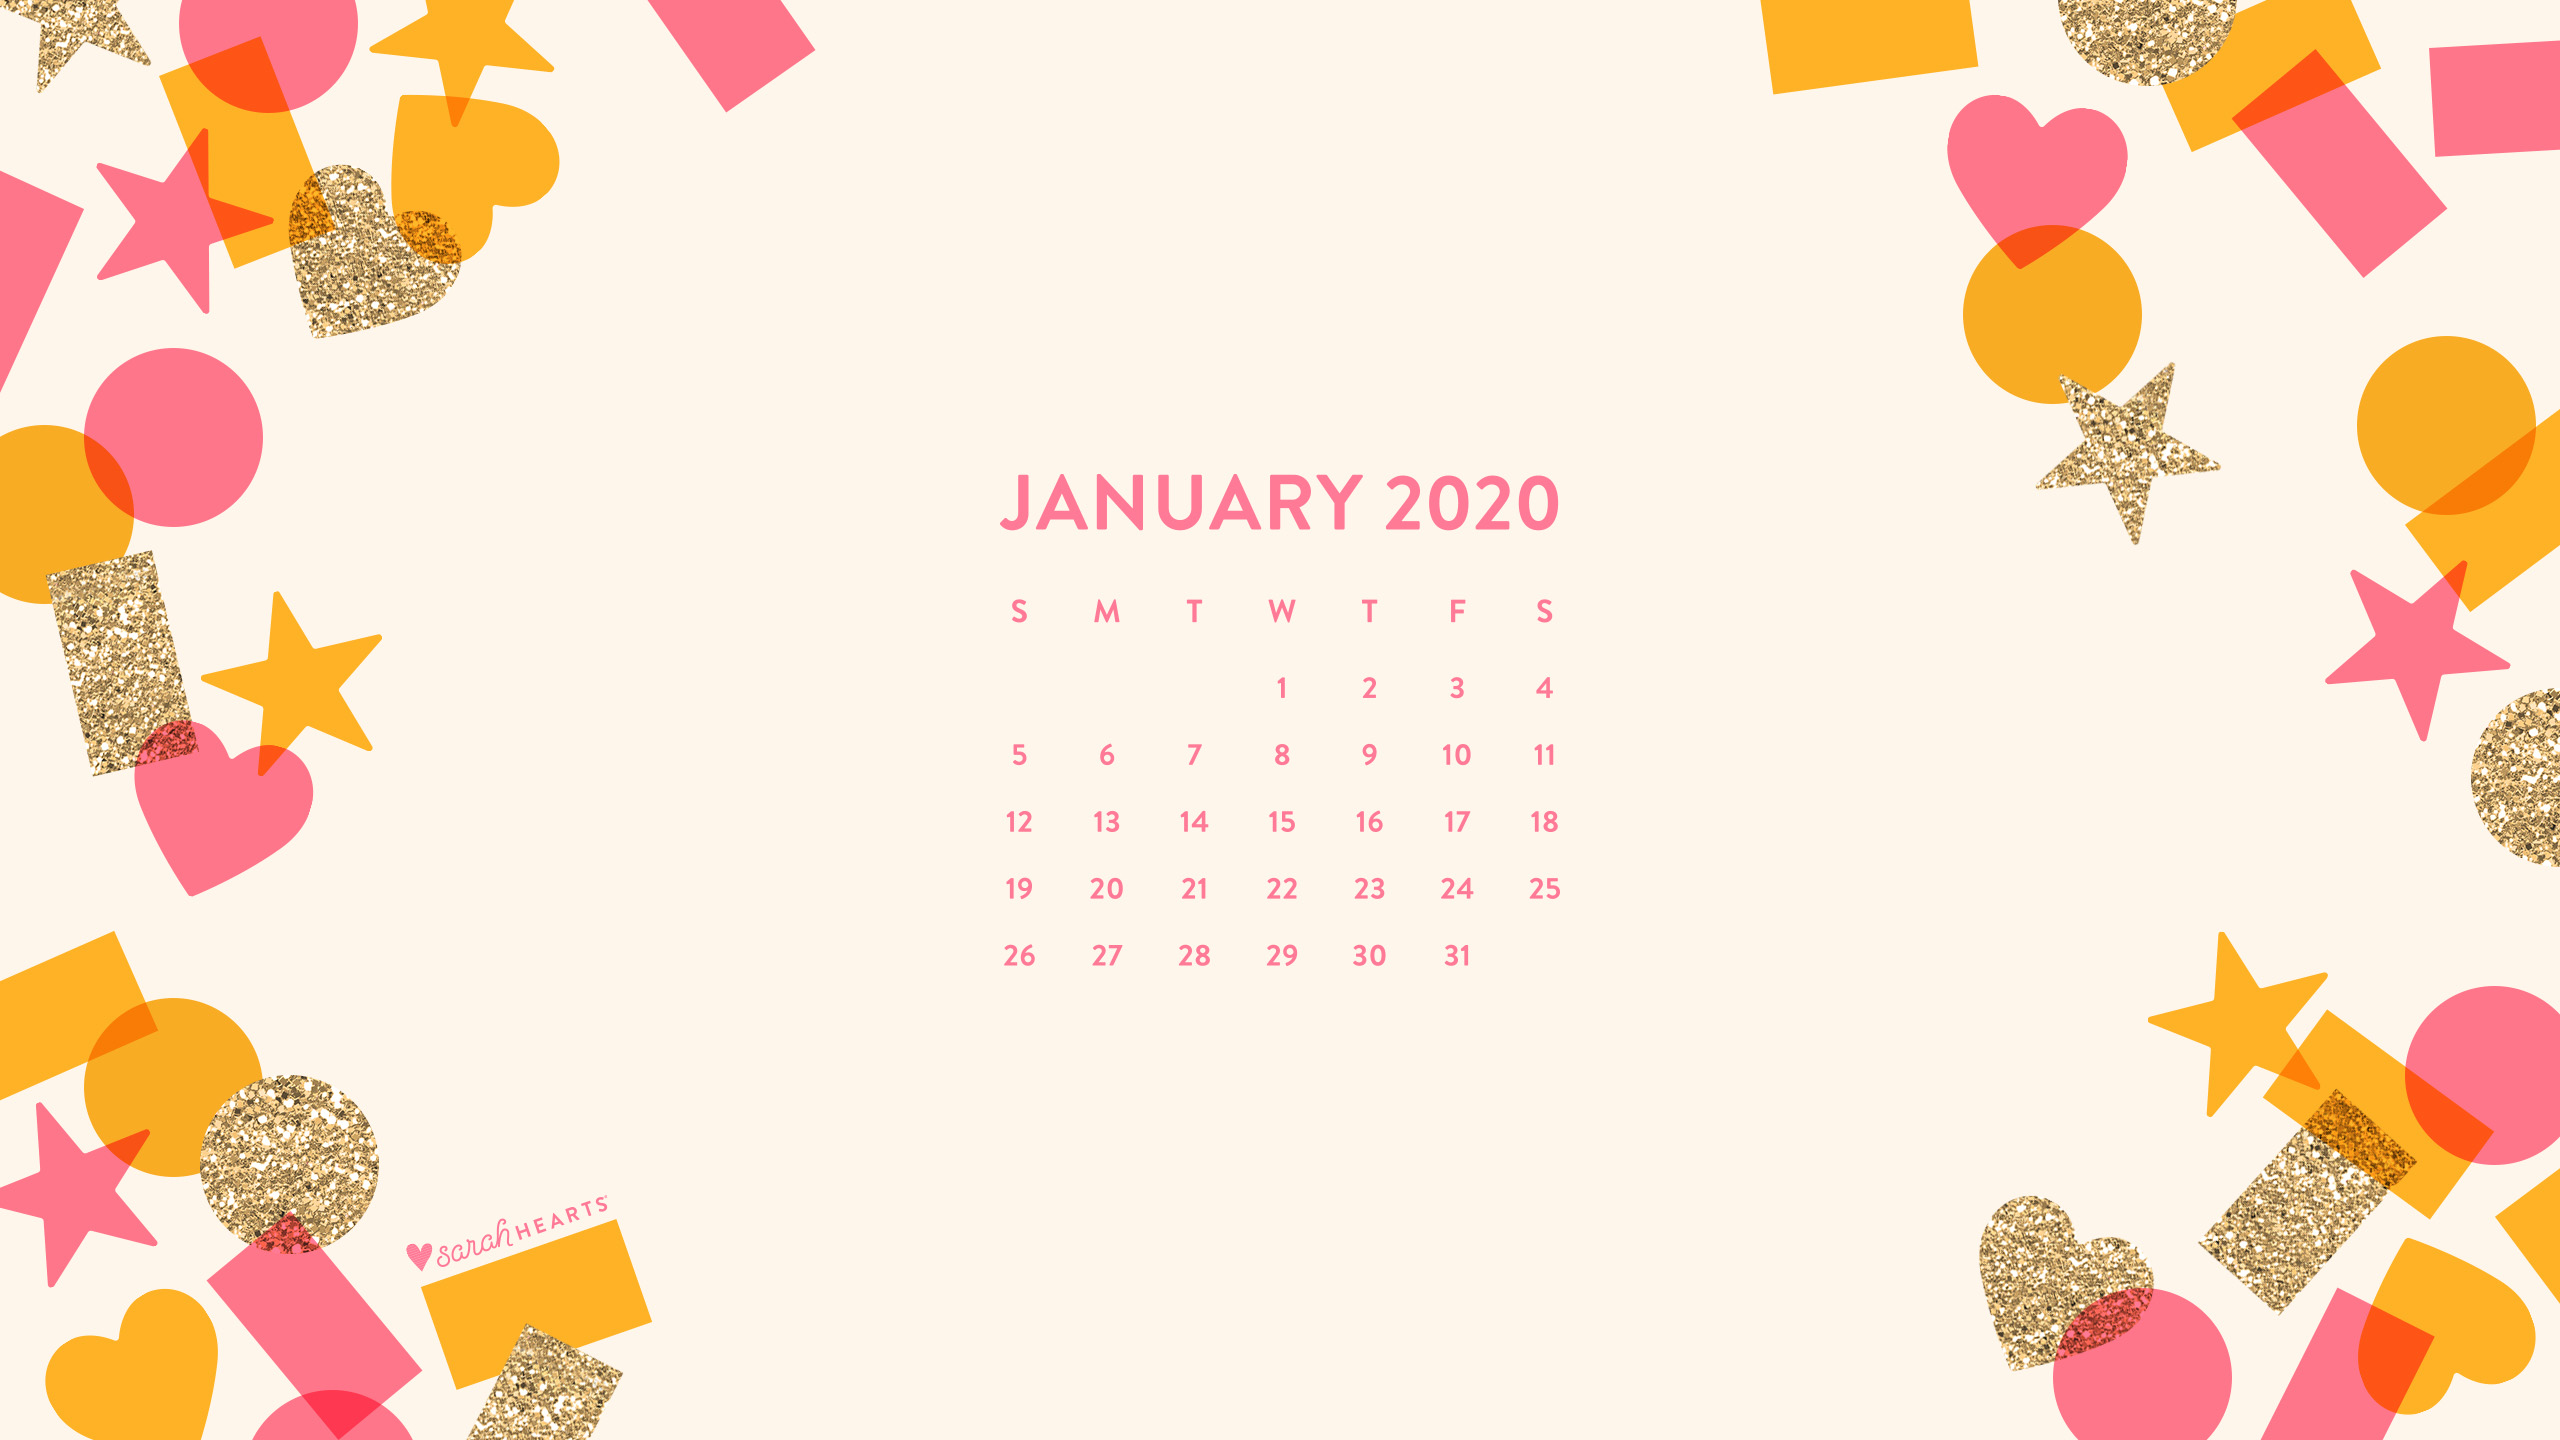 January 2020 Confetti Calendar Wallpaper   Sarah Hearts 2560x1440